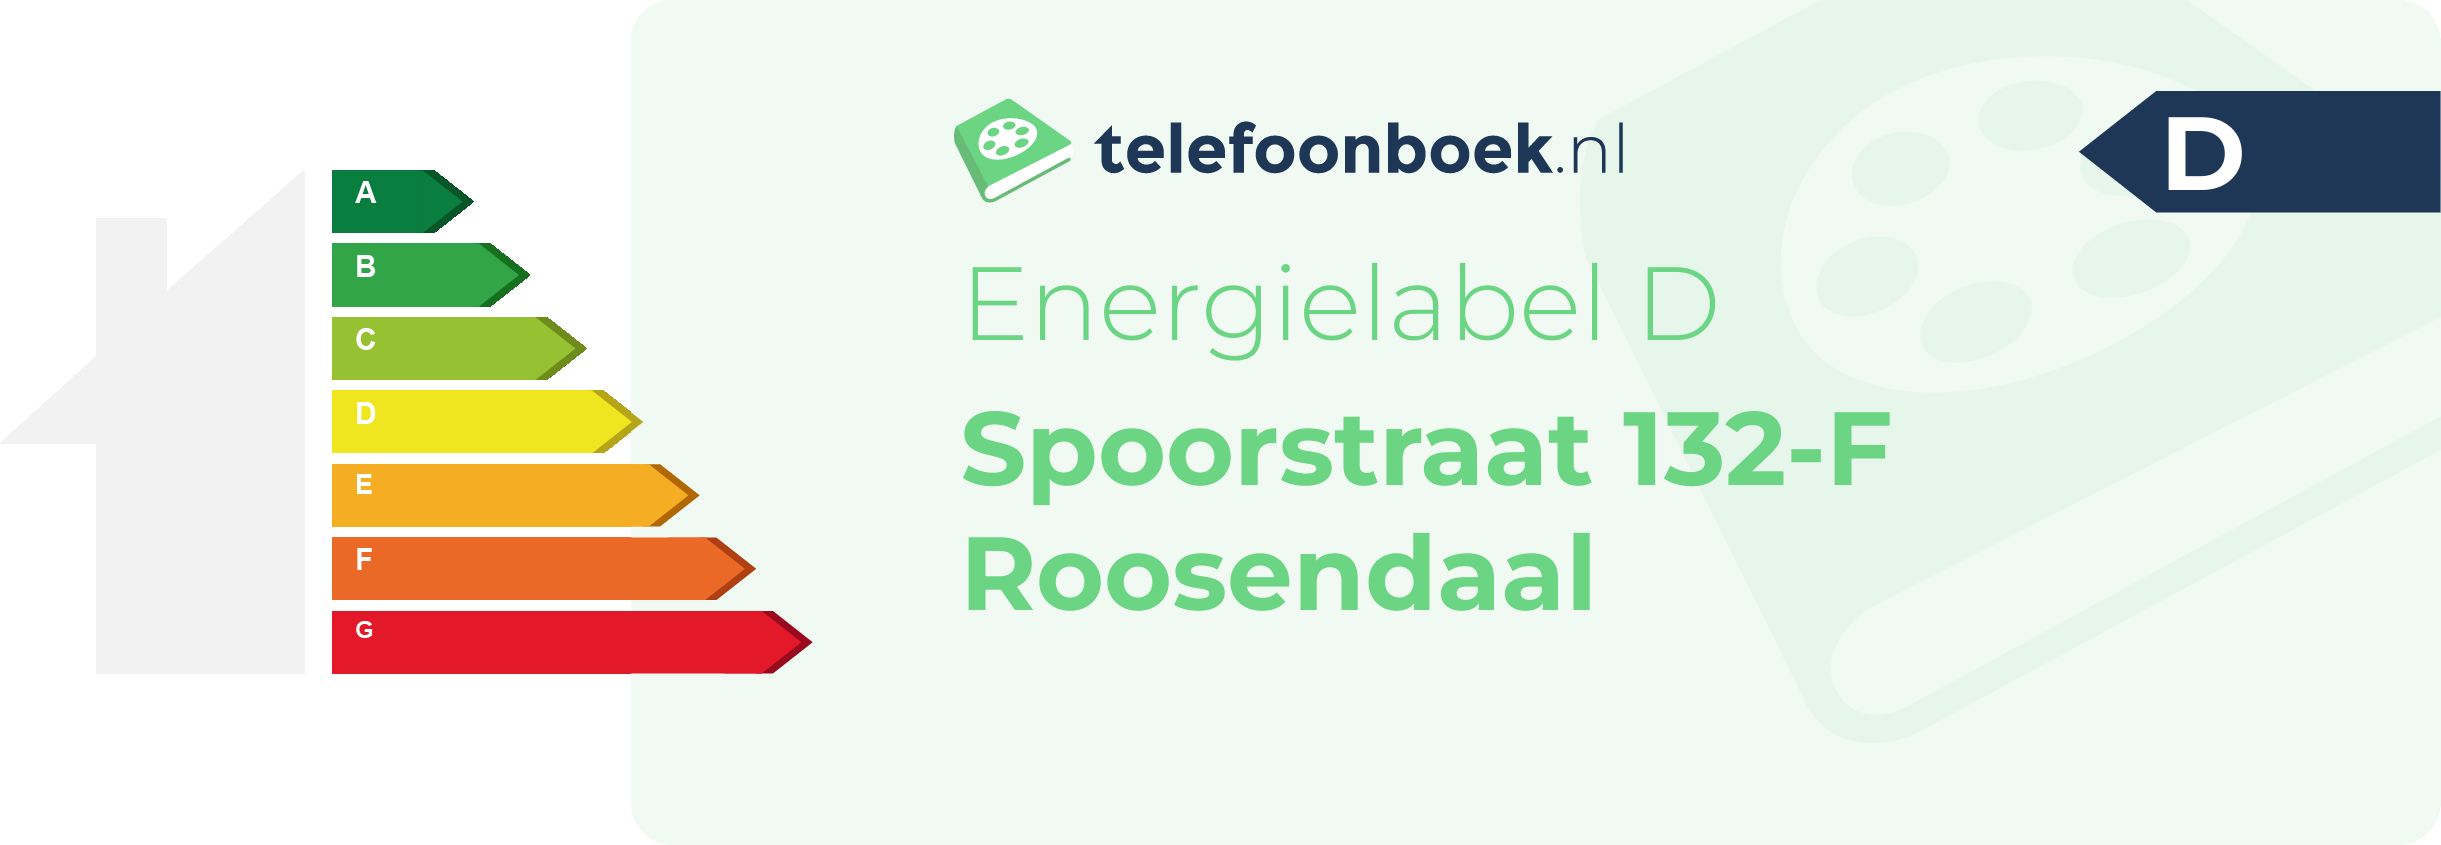 Energielabel Spoorstraat 132-F Roosendaal